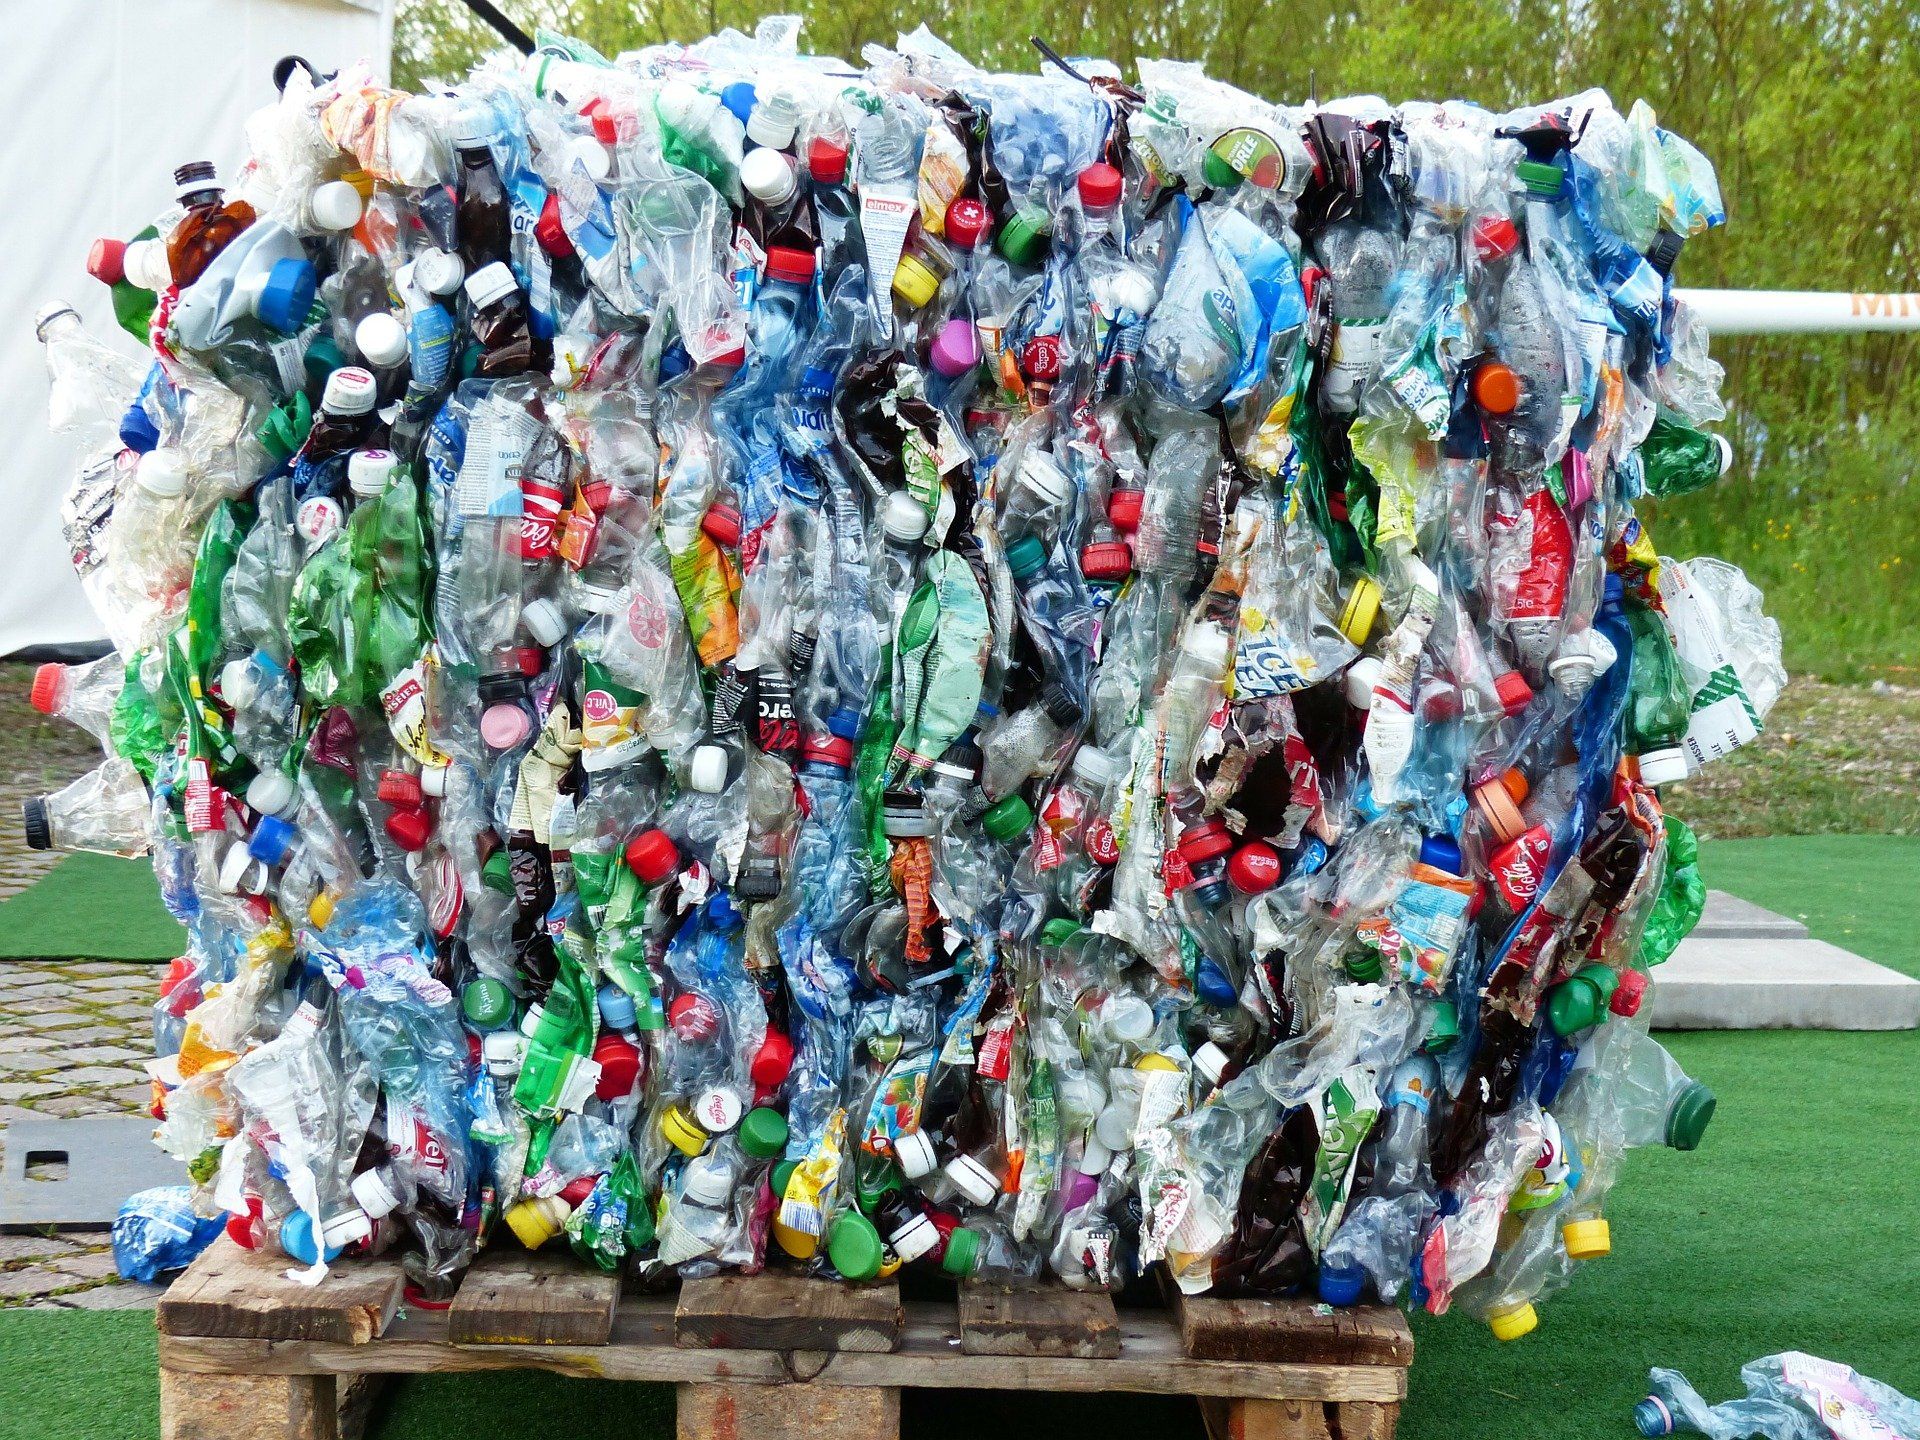 La UE prohibirá la exportación difíciles de reciclar en su estrategia para impulsar la economía circular / Foto: Hans Braxmeier - Pixabay 